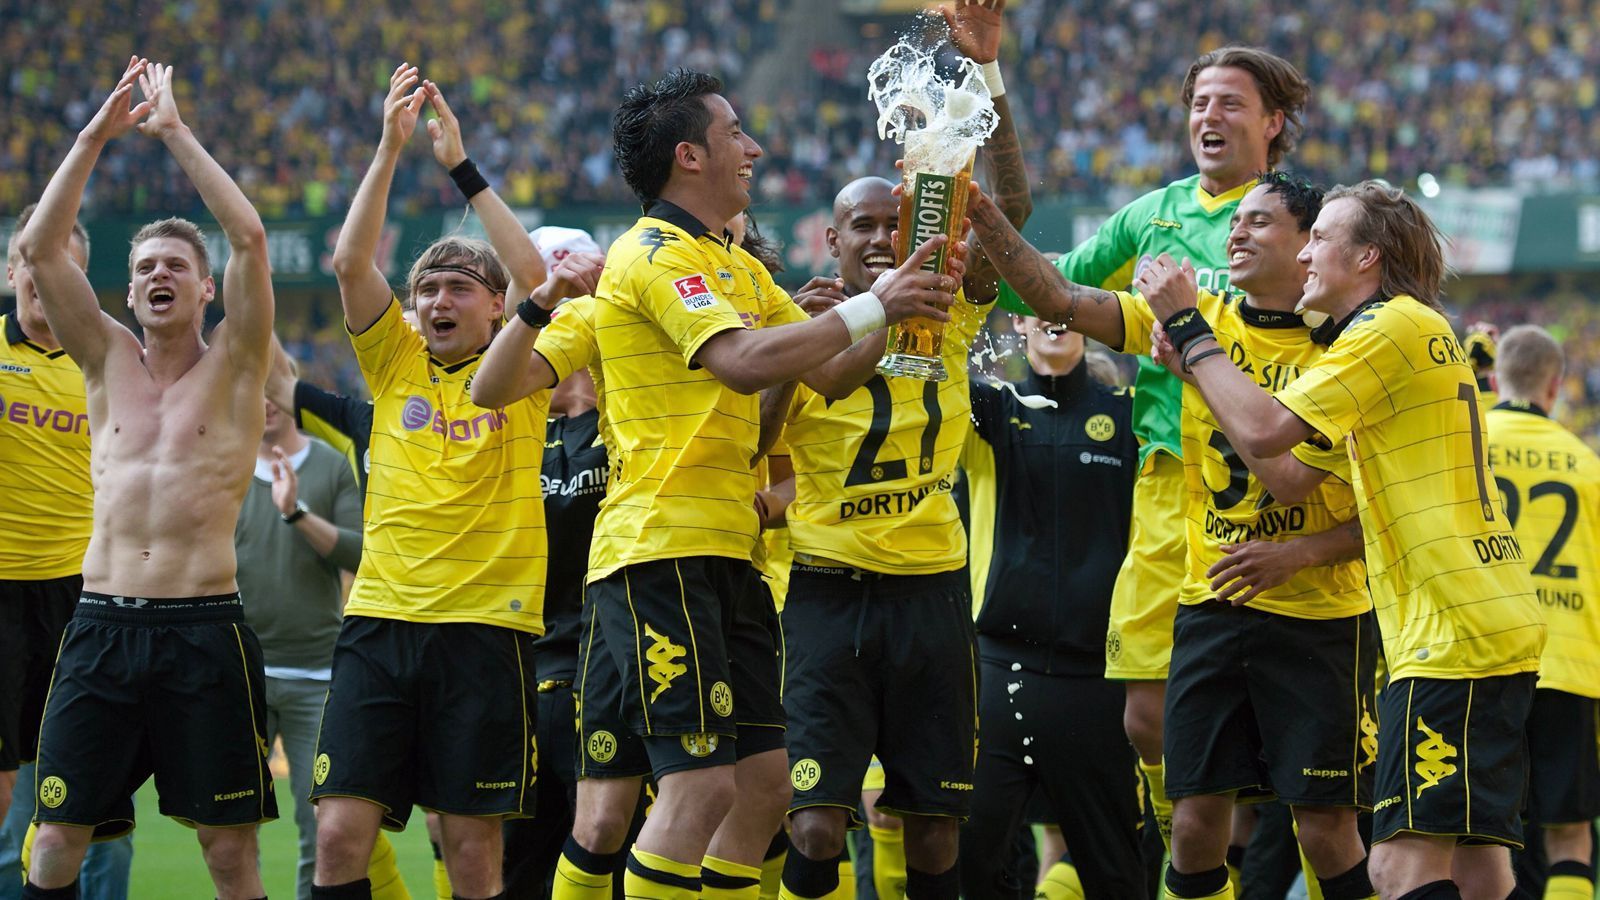 
                <strong>Das wurde aus Dortmunds Meister-Helden von 2011</strong><br>
                Am 30. April 2011 sicherte sich Borussia Dortmund durch einen 2:0-Sieg gegen den 1. FC Nürnberg den vorzeitigen Meistertitel in der Bundesliga-Saison 2010/11. ran.de zeigt, was aus den Stars wurde, die vor genau zehn Jahren den damals sensationellen Erfolg einfahren konnten. 
              